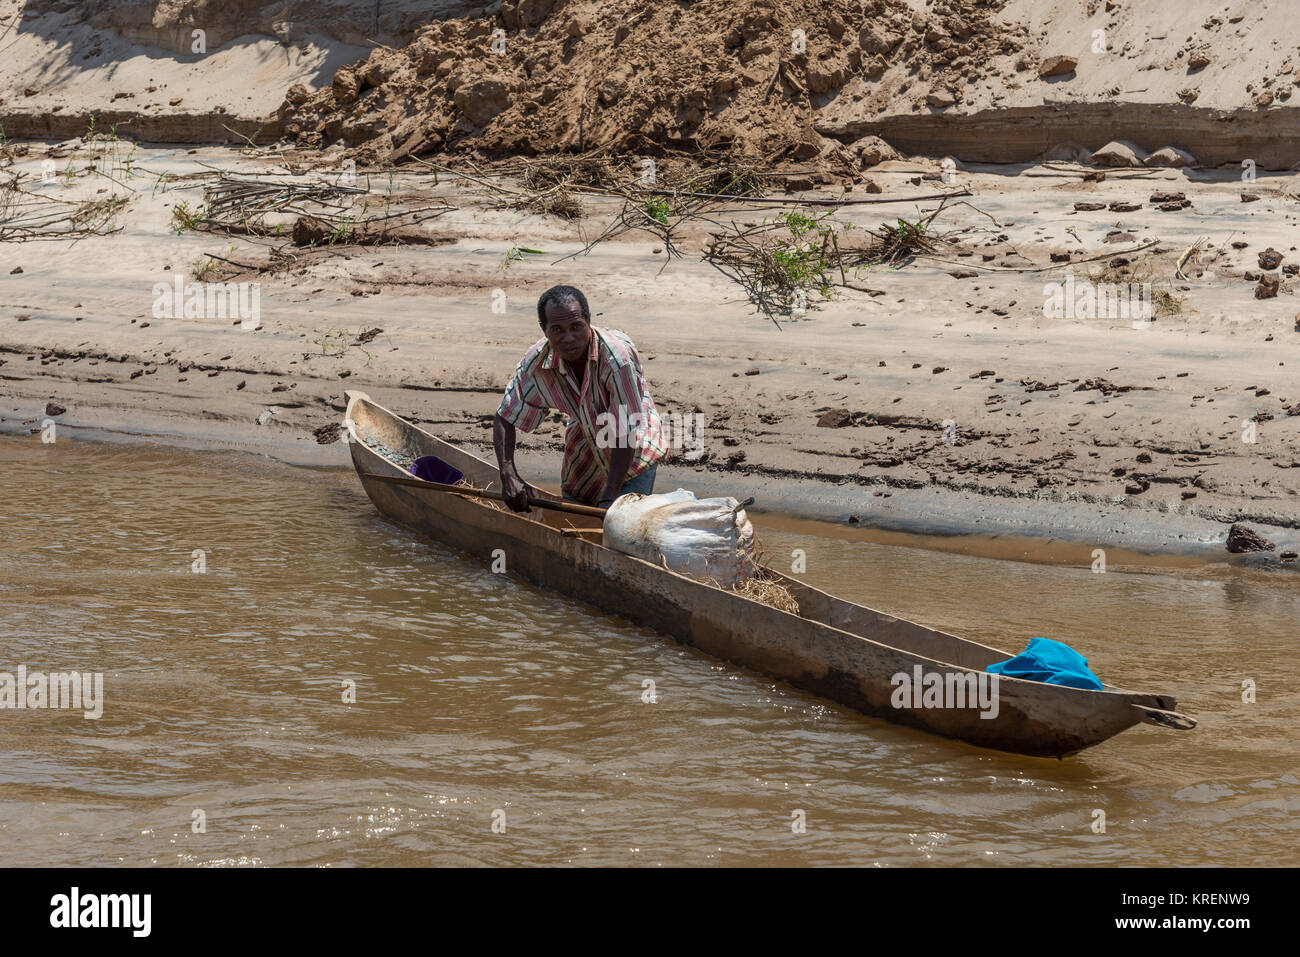 Un homme et sa pirogue sur la rivière Mania. Madagascar, l'Afrique. Banque D'Images